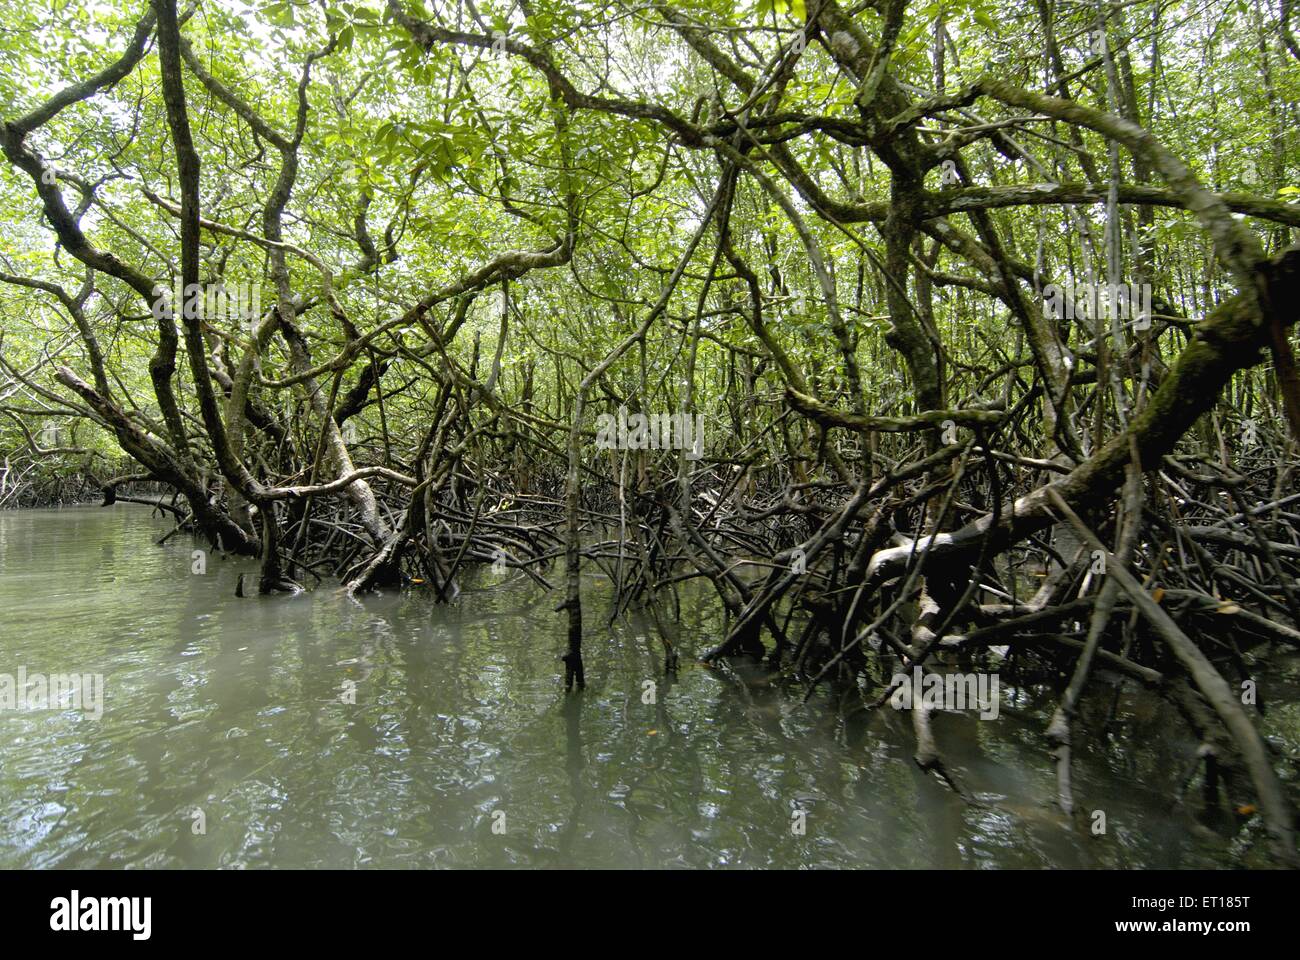 Racines de mangrove, îles Andaman, Port Blair, îles Andaman et Nicobar, territoire de l'Union de l'Inde, UT, Inde, Asie Banque D'Images